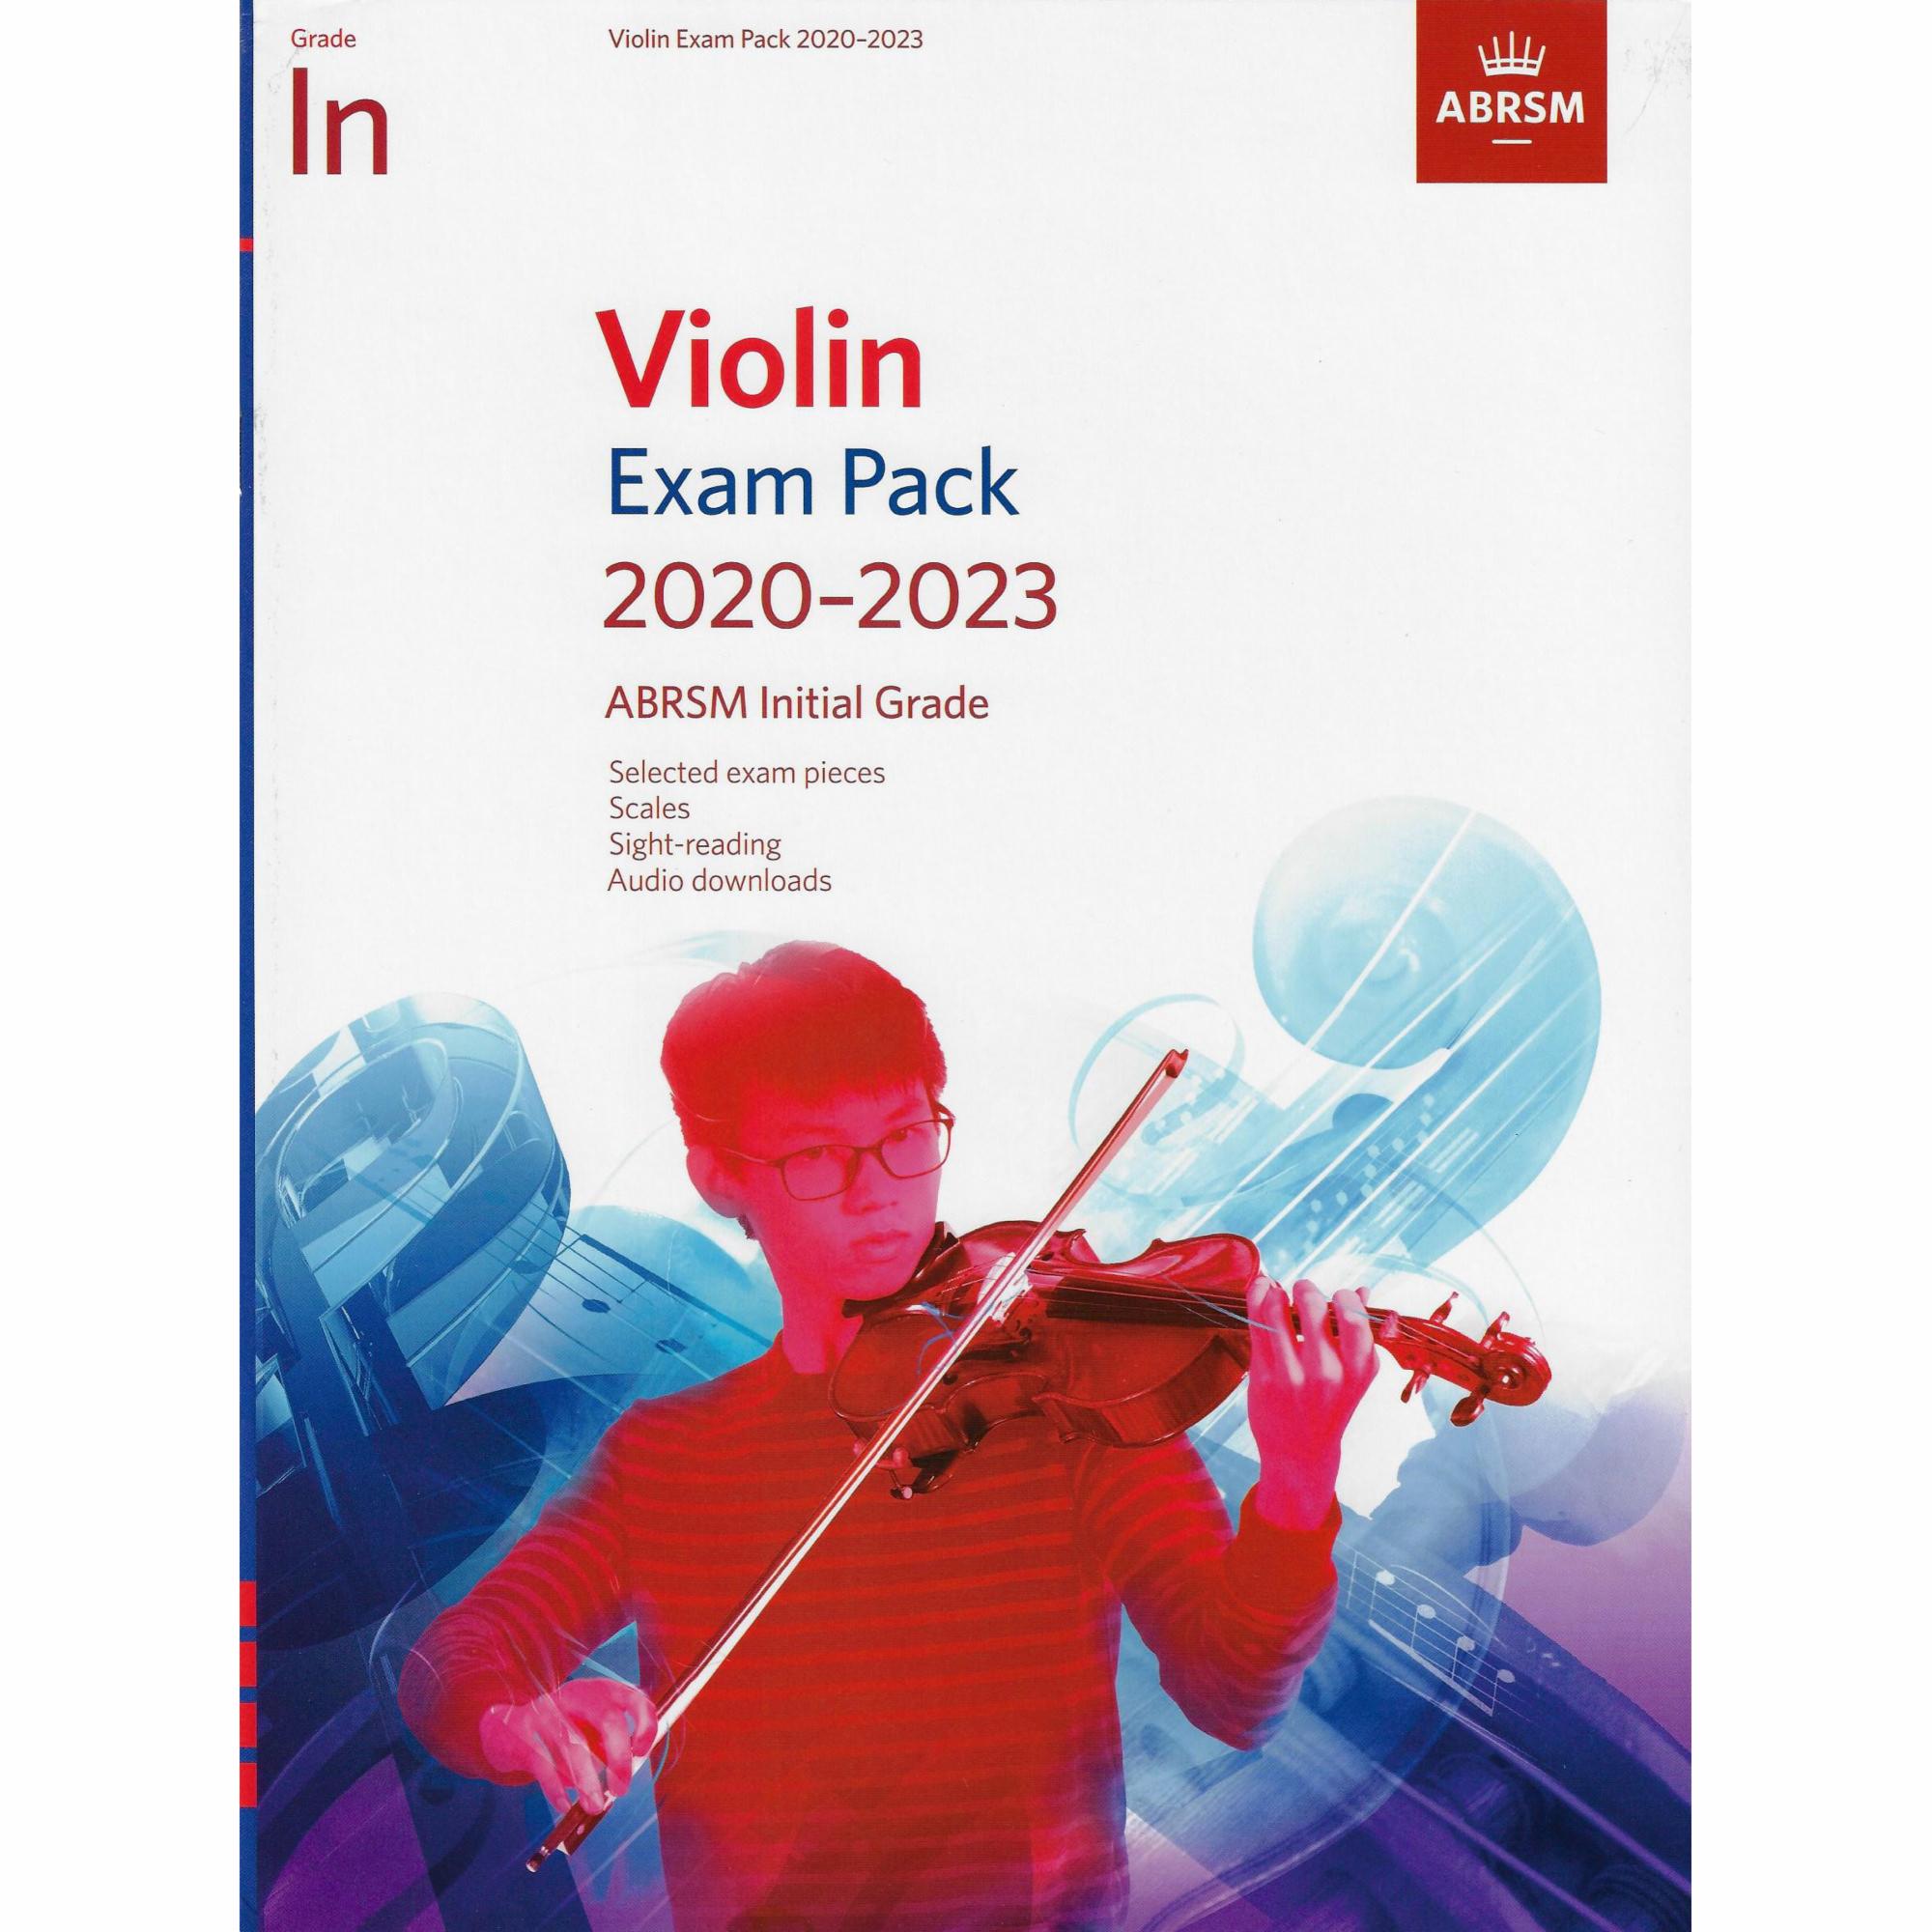 ABRSM Initial Grade Exam Pack 2020-2023 for Violin, Viola, Cello, or Bass